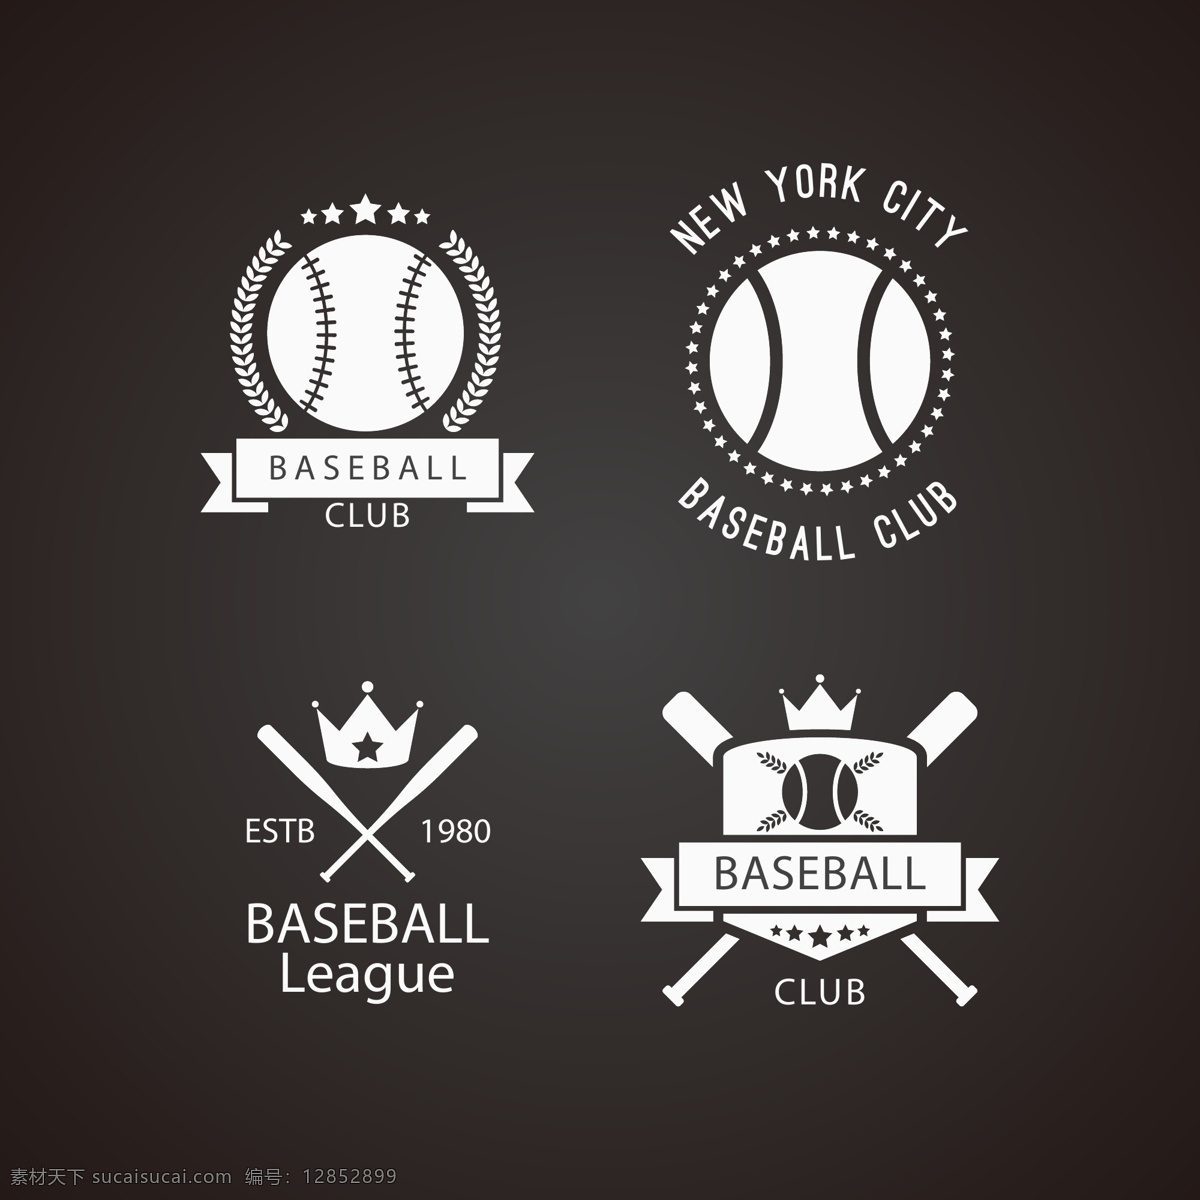 棒球 比赛 培训 俱乐部 标识 棒球海报 棒球运动 棒球体育 少儿棒球 棒球训练班 美国棒球 棒球比赛 棒球比赛海报 棒球广告 体育运动矢量